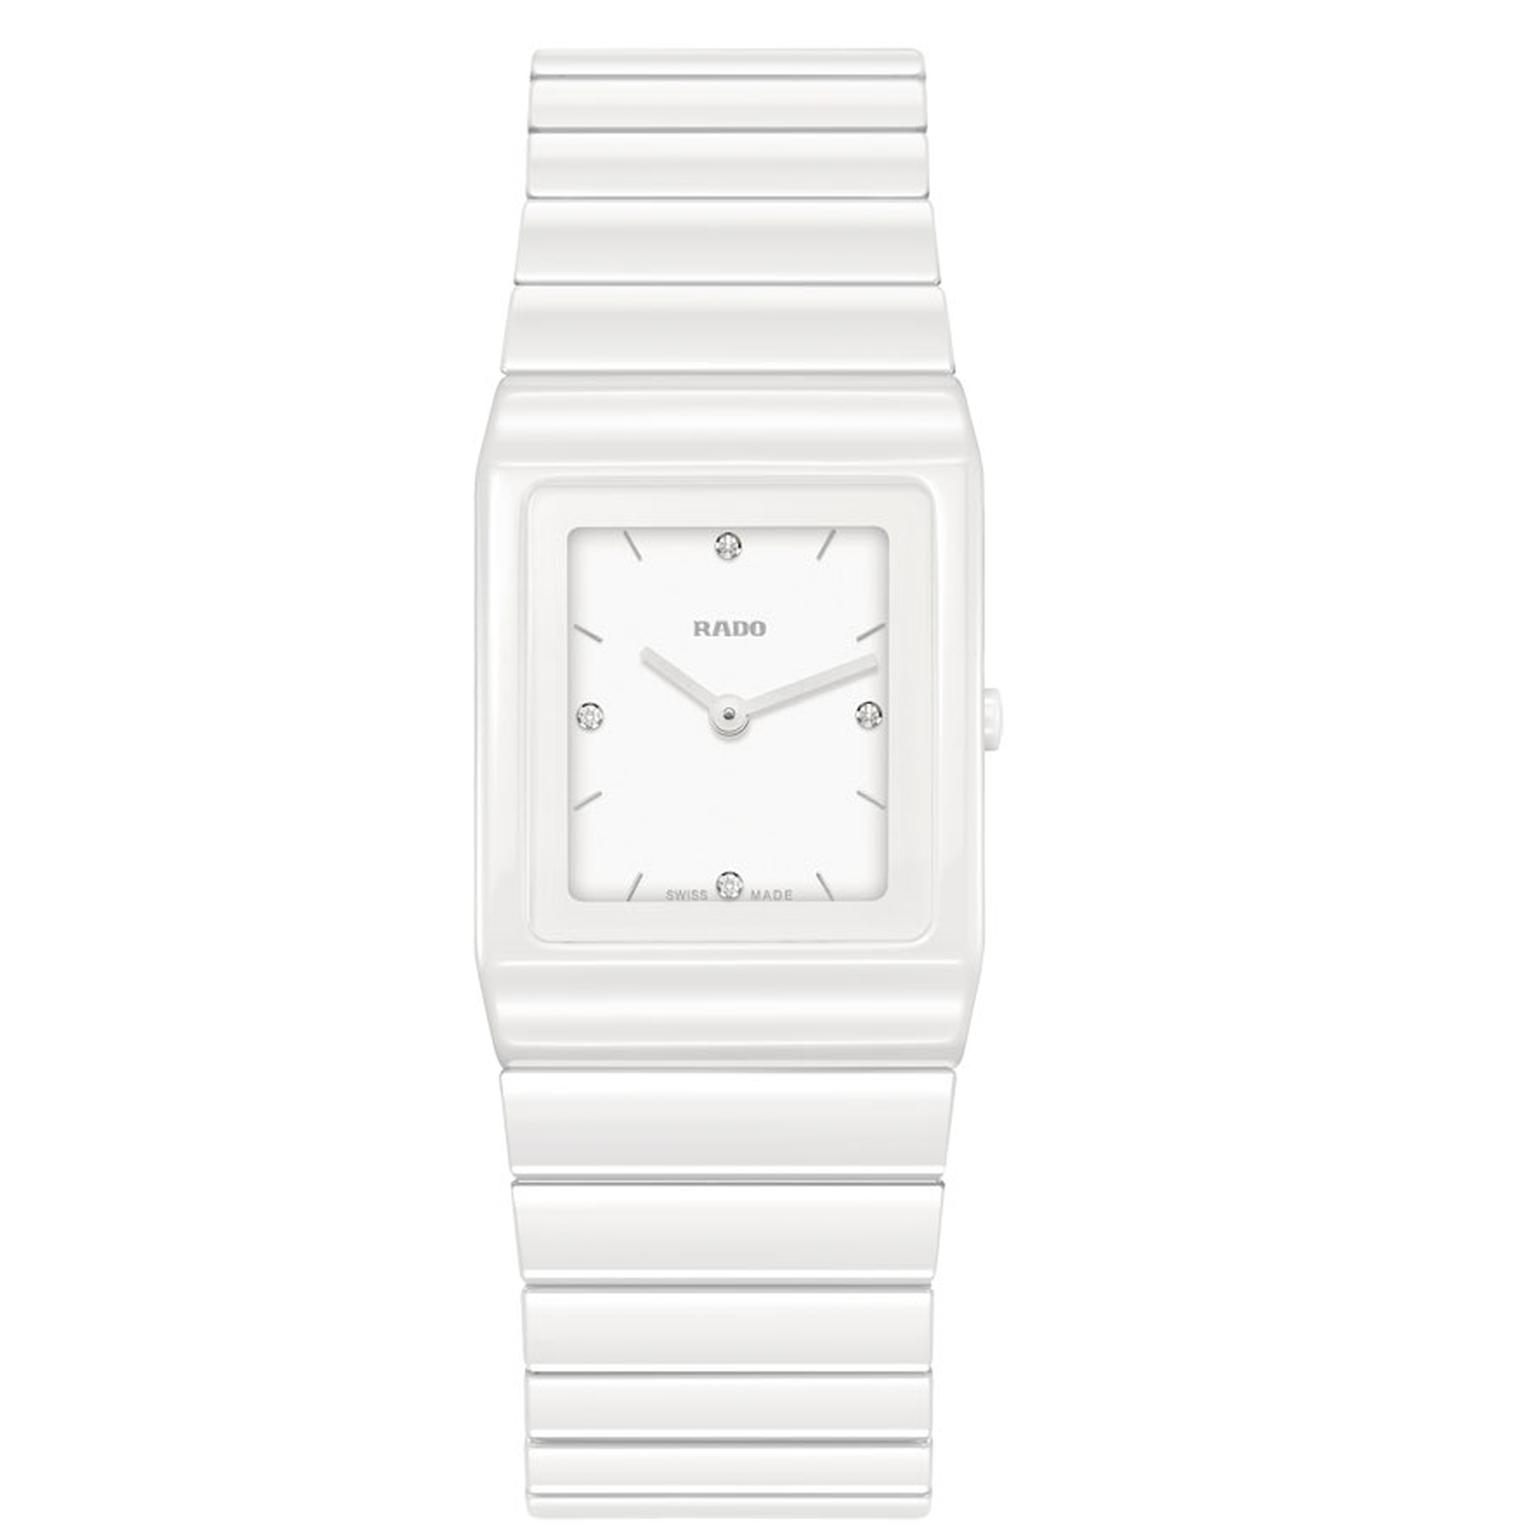 Rado Ceramica ladies' ceramic watch in white